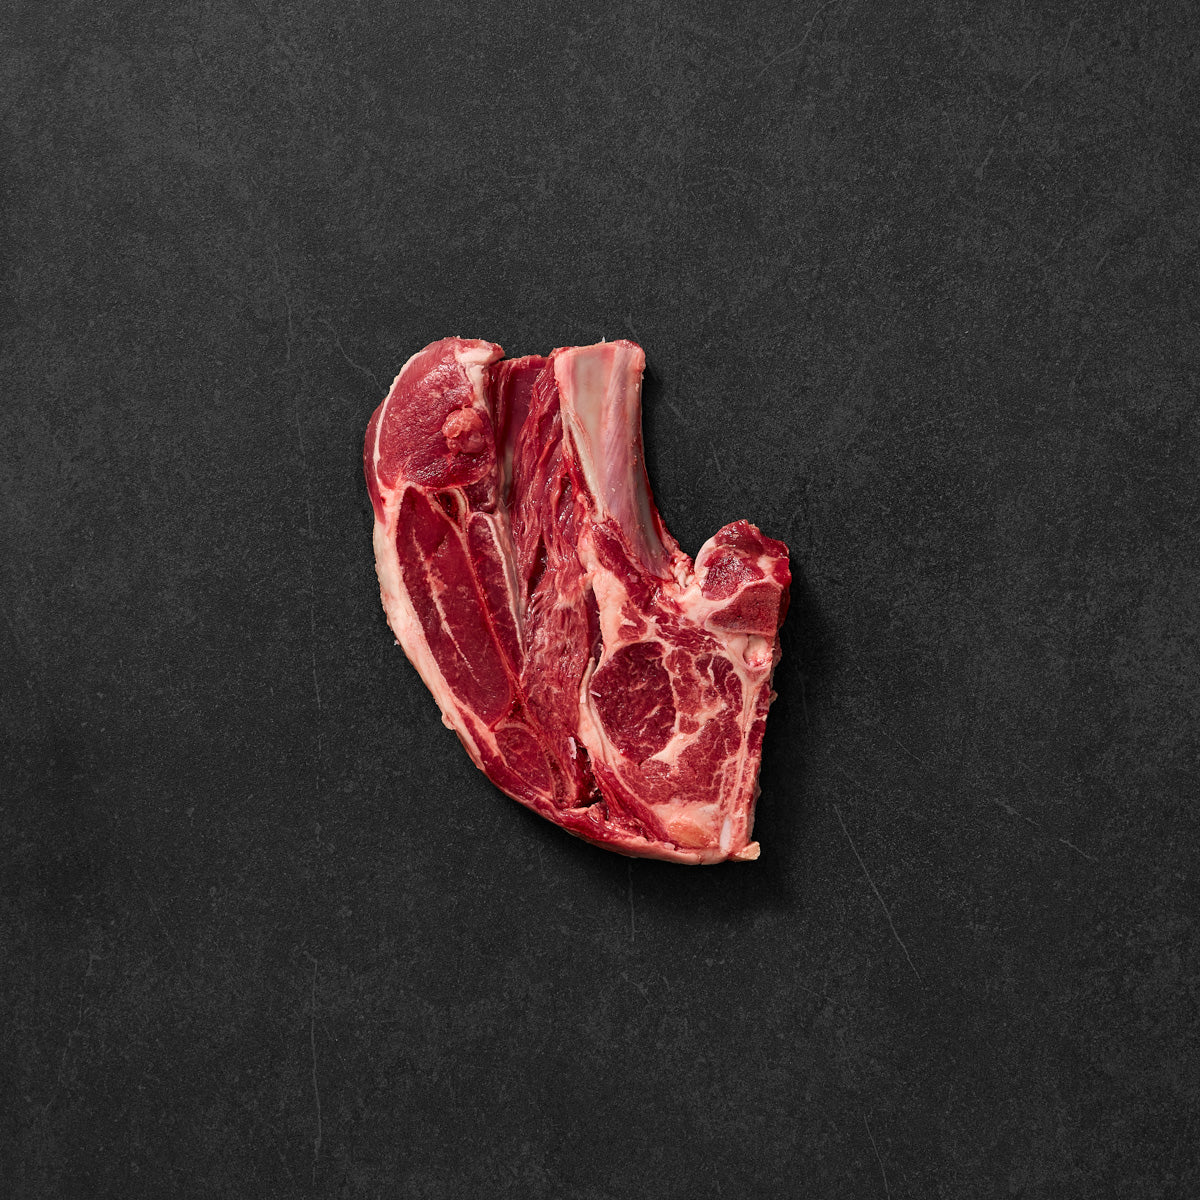 Body By Brando Meat Box, 4kg | McKenzie's Meats